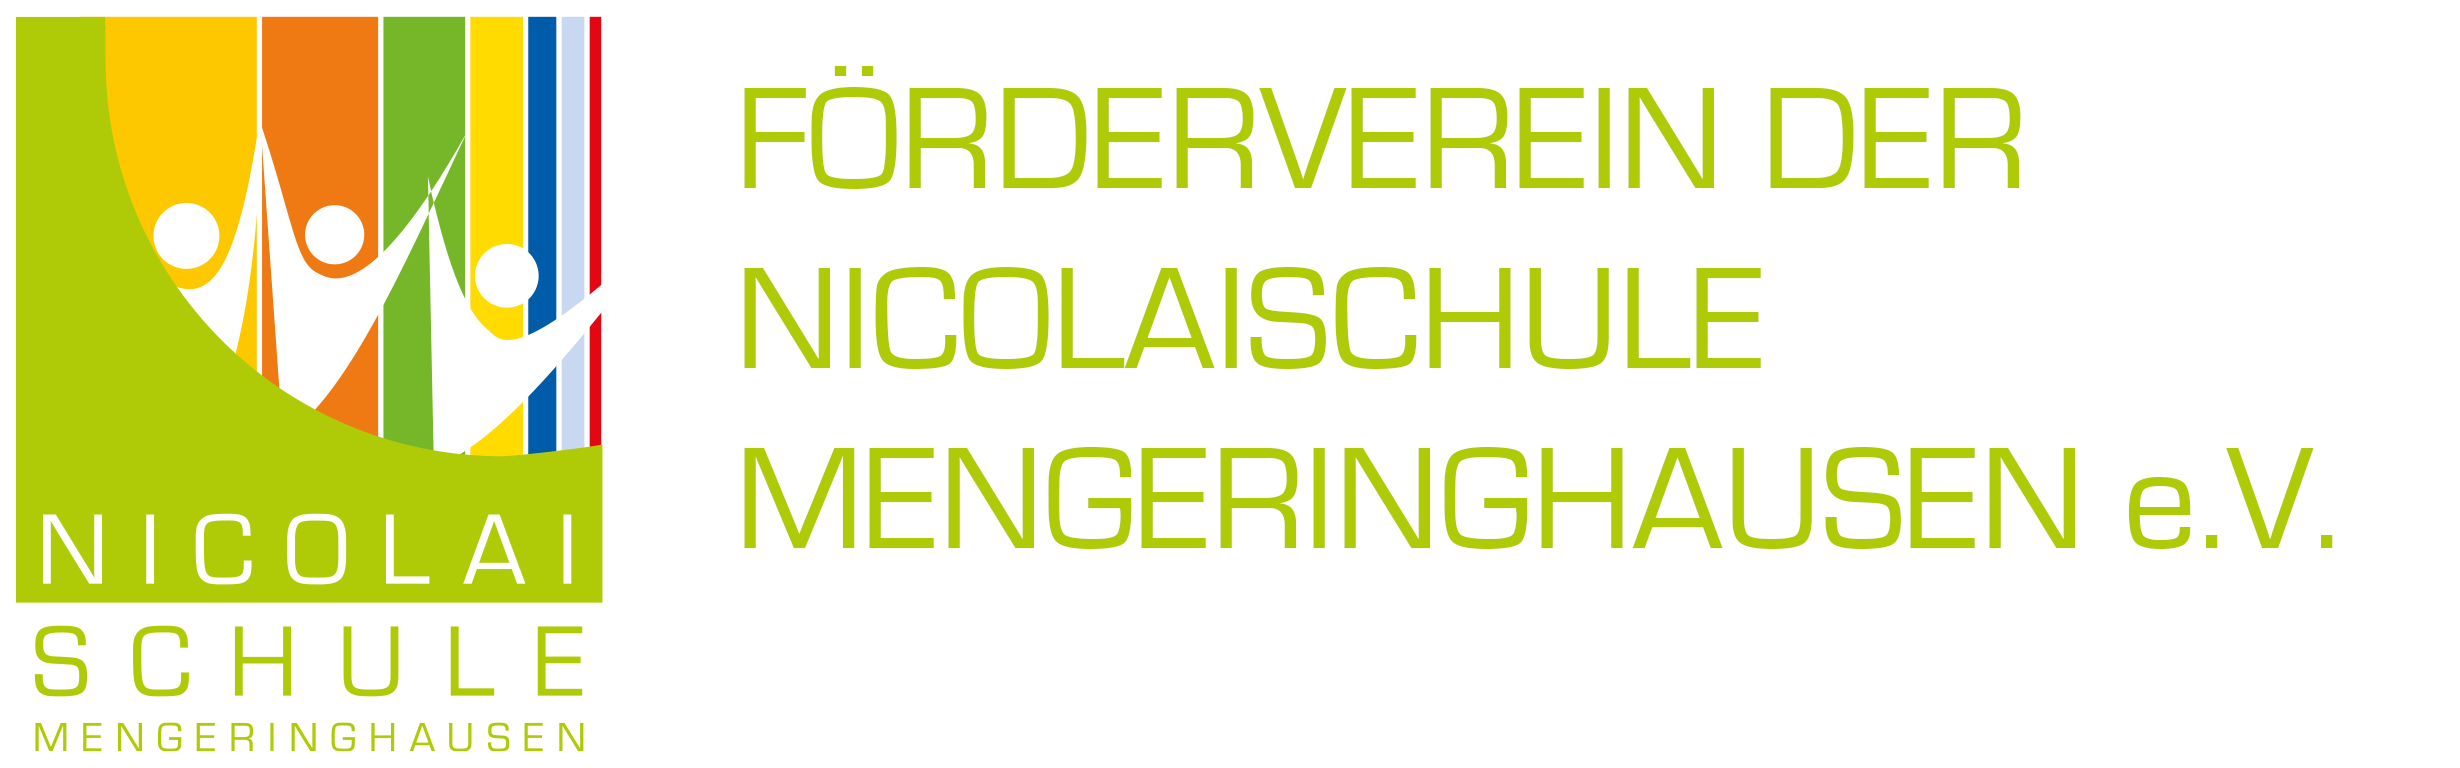 Förderverein Nicolai-Schule Mengeringhausen e.V.